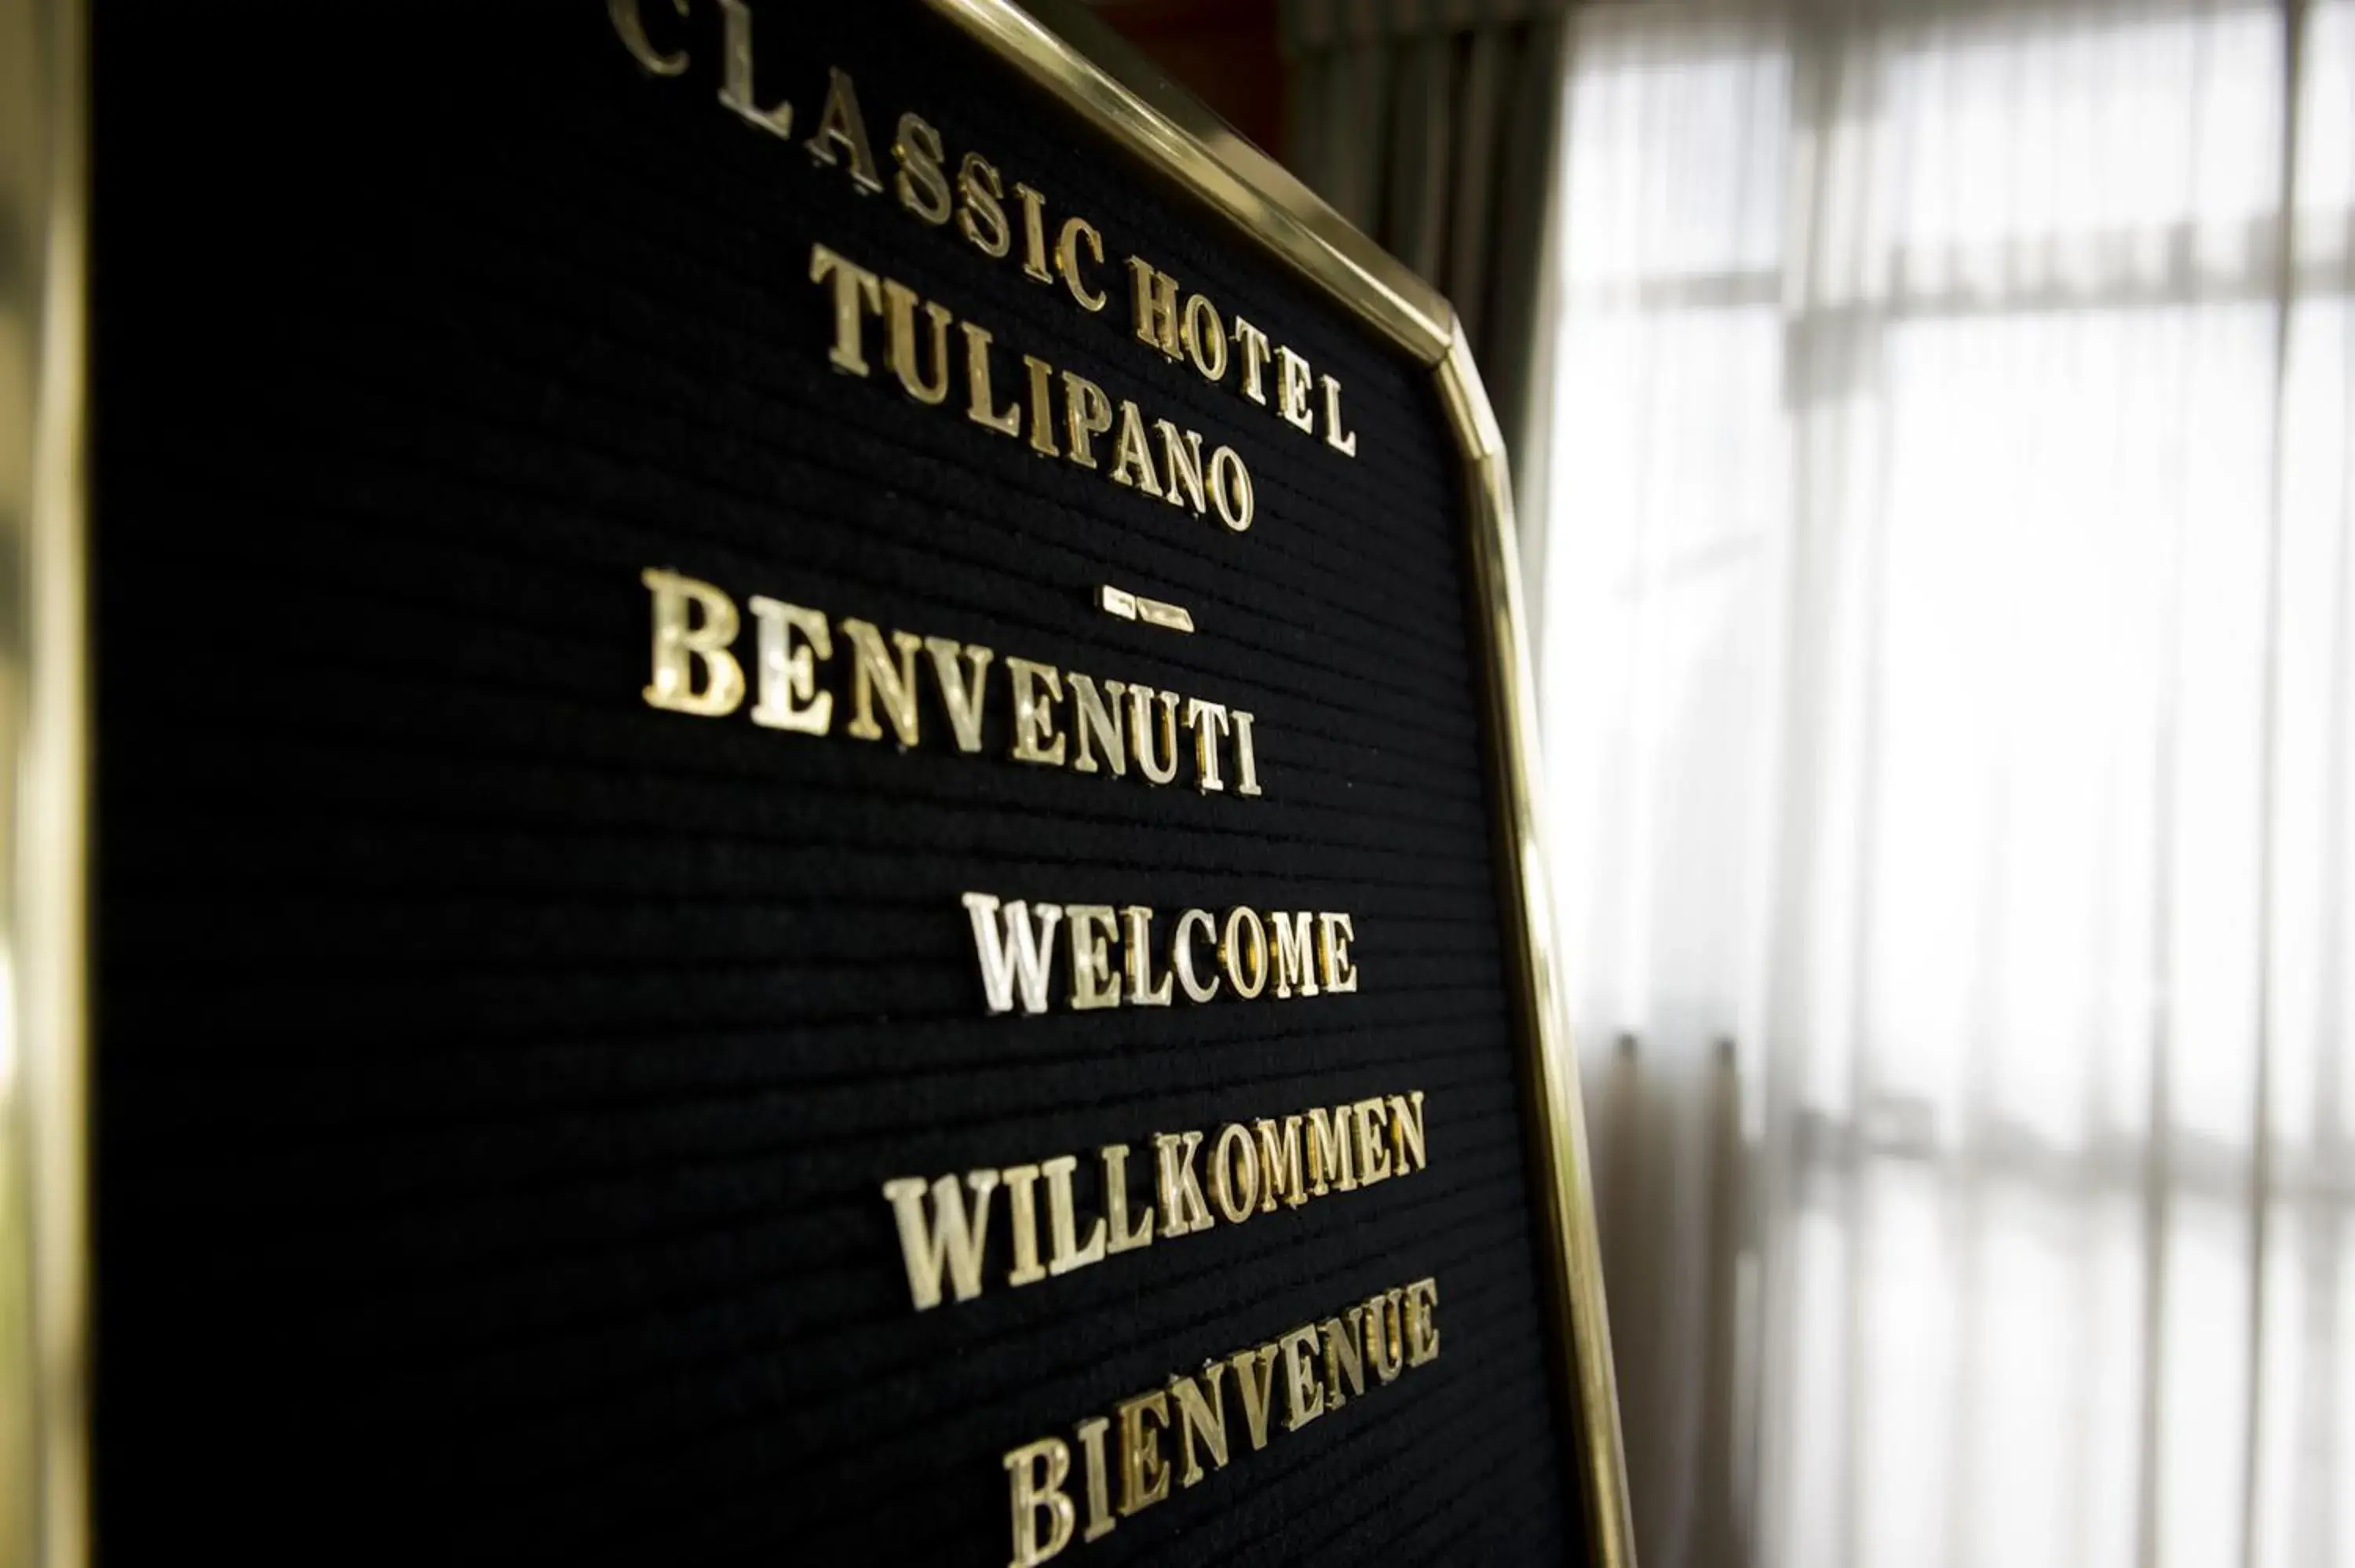 Decorative detail in Classic Hotel Tulipano